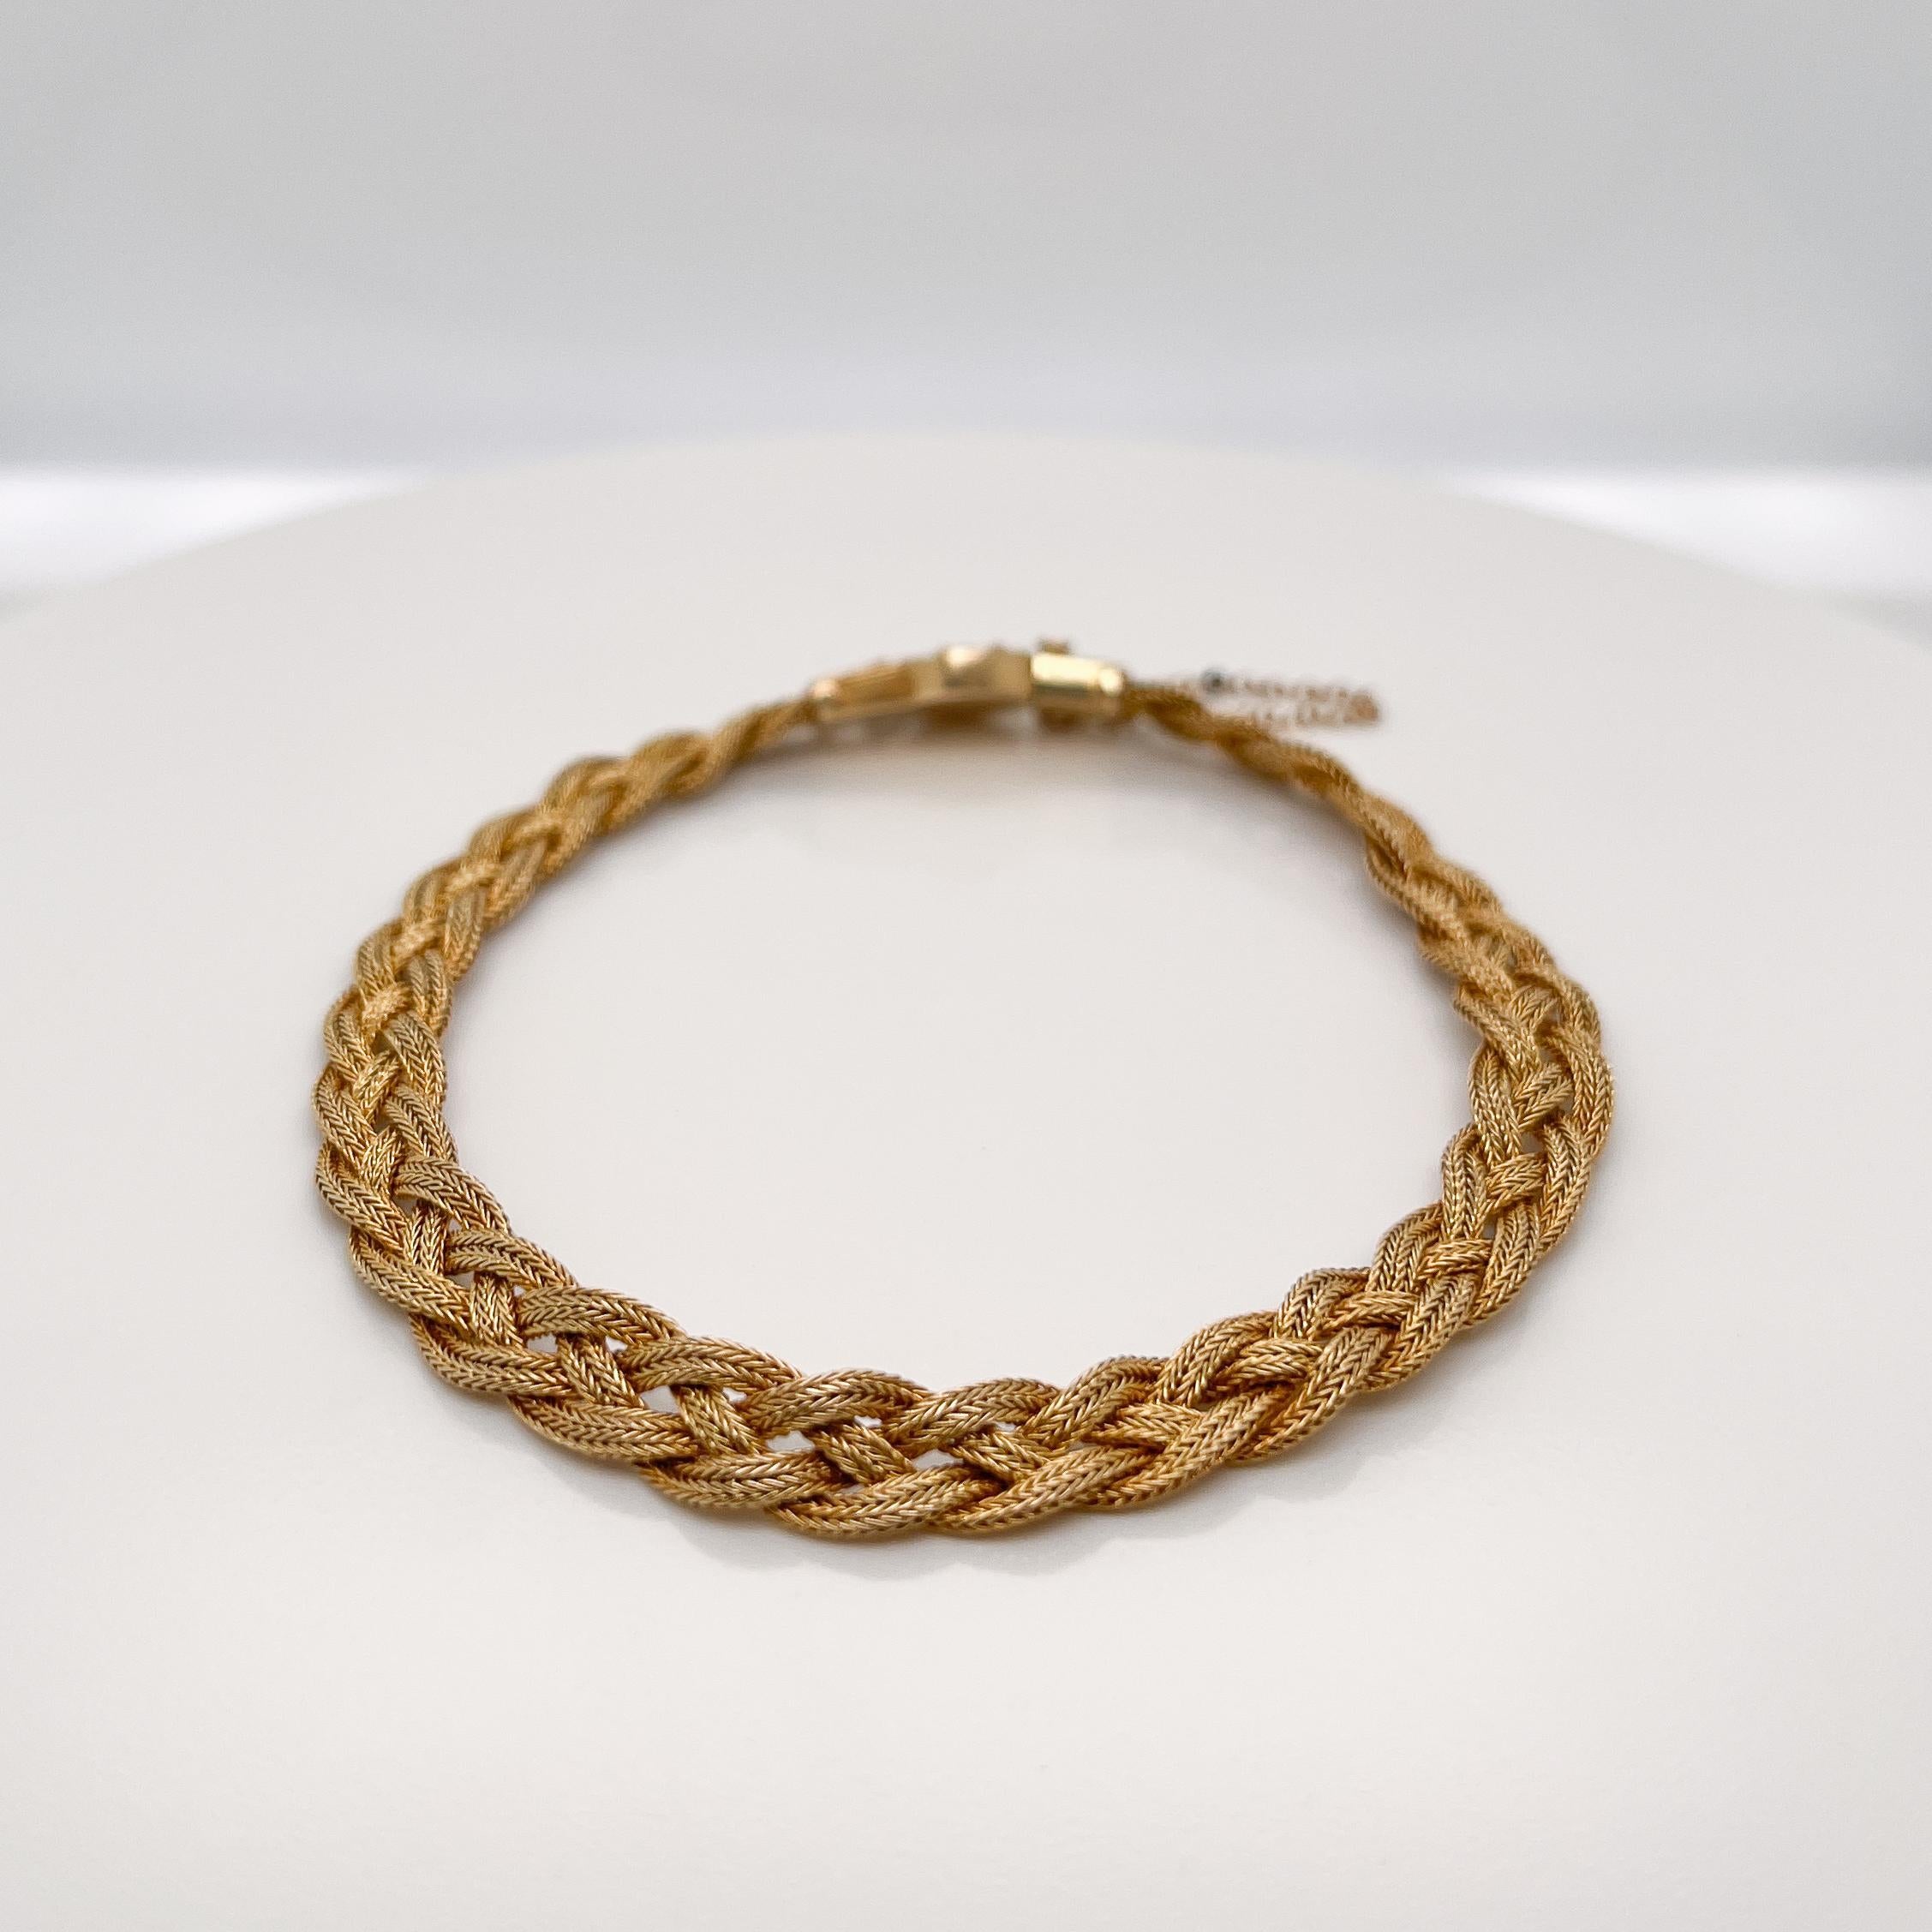 Eine sehr feine 14k Gold etruskischen Stil Armband.

Mit drei zarten Strängen aus geflochtenem Golddraht, die in einem Kastenverschluss im etruskischen Stil mit Granulat- und Drahtverzierung enden. 

Set mit einer Sicherheitskette.

Einfach ein fein